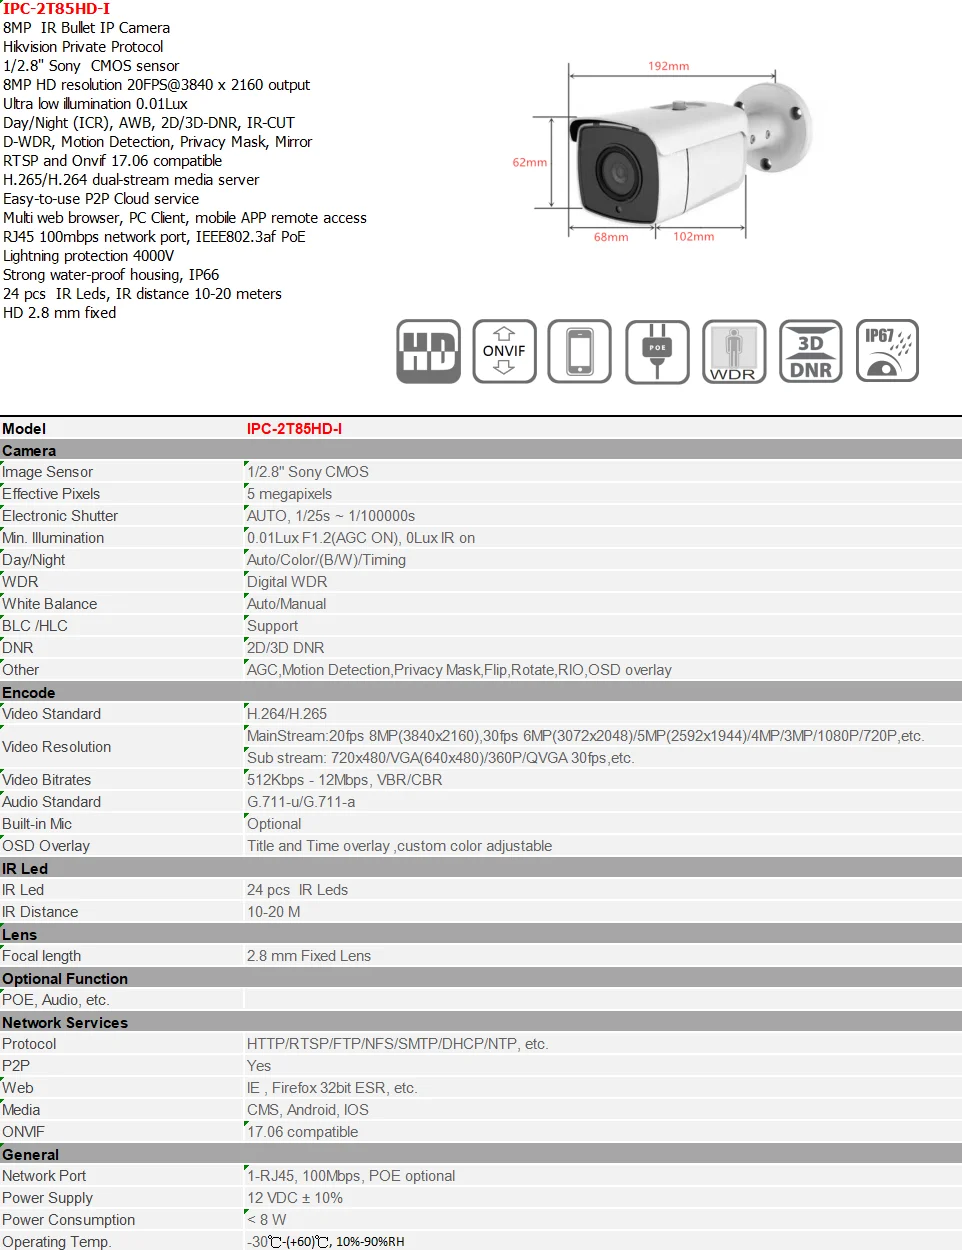 4K Bullet IP камера антивандальная H.265 48 в POE 8MP и 5MP камера P2P обнаружения движения металла ONVIF совместимый Hikvision